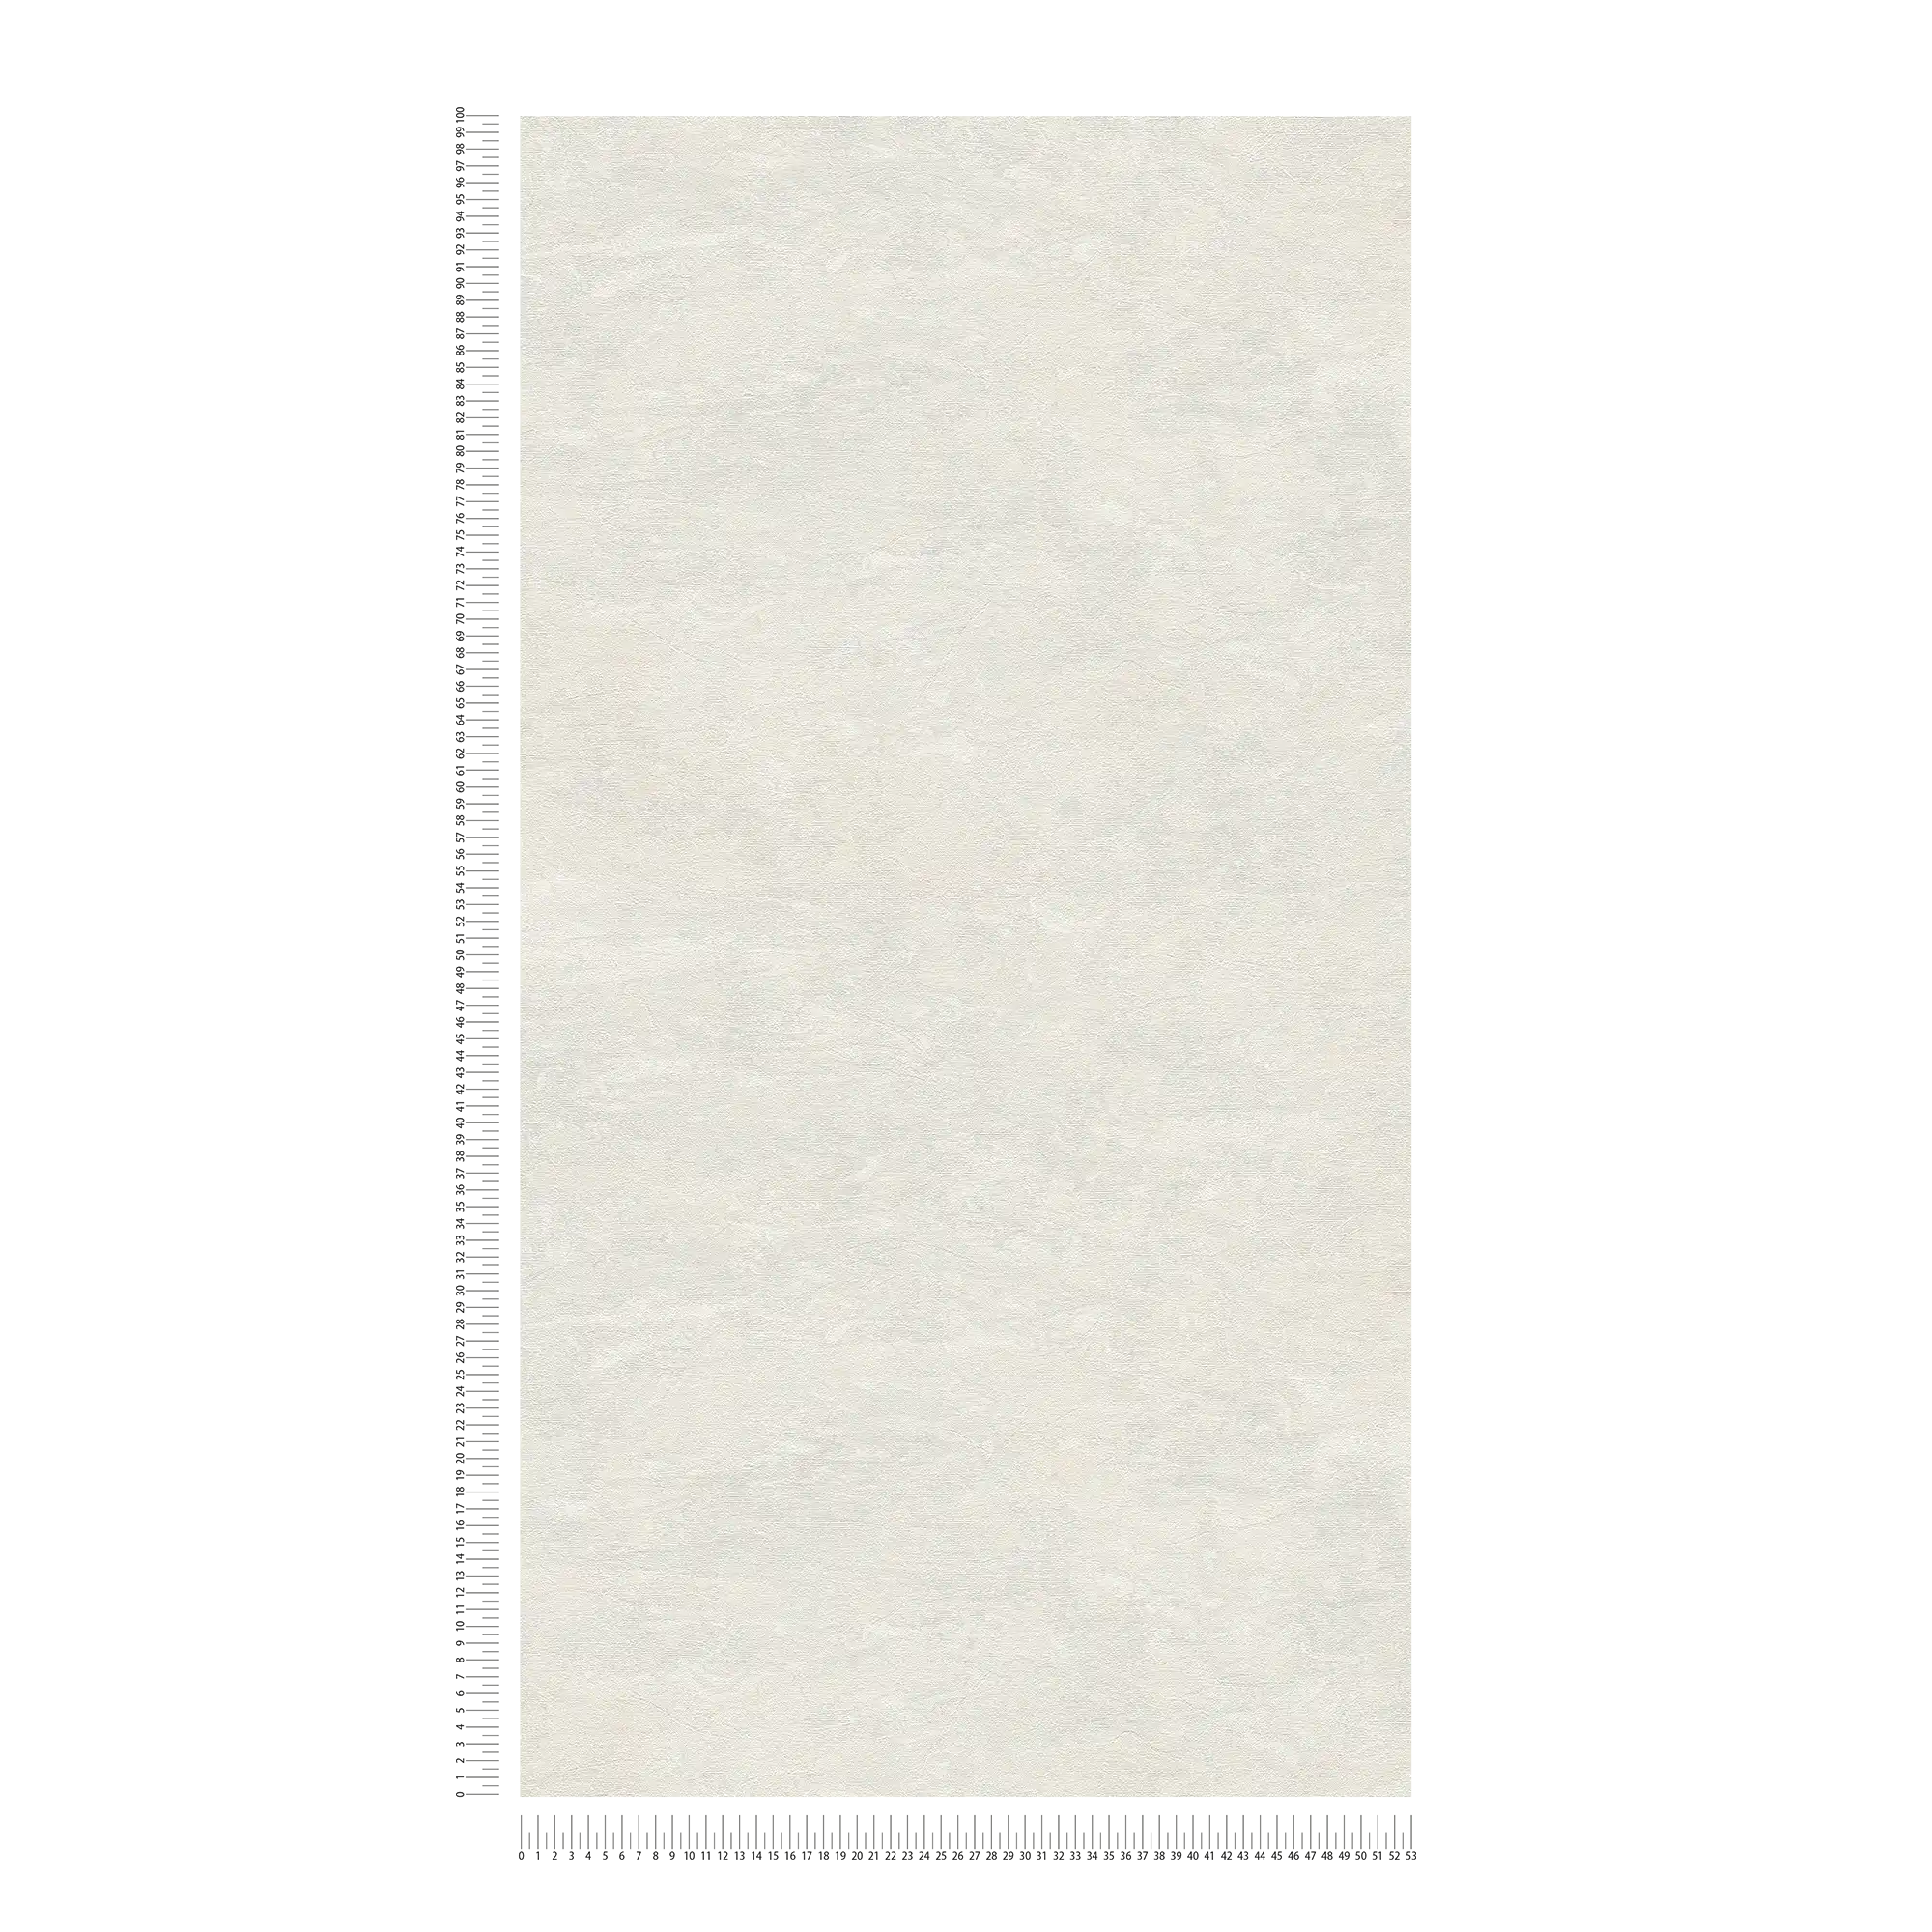             Papier peint blanc crème avec marbrures subtiles - blanc, gris
        